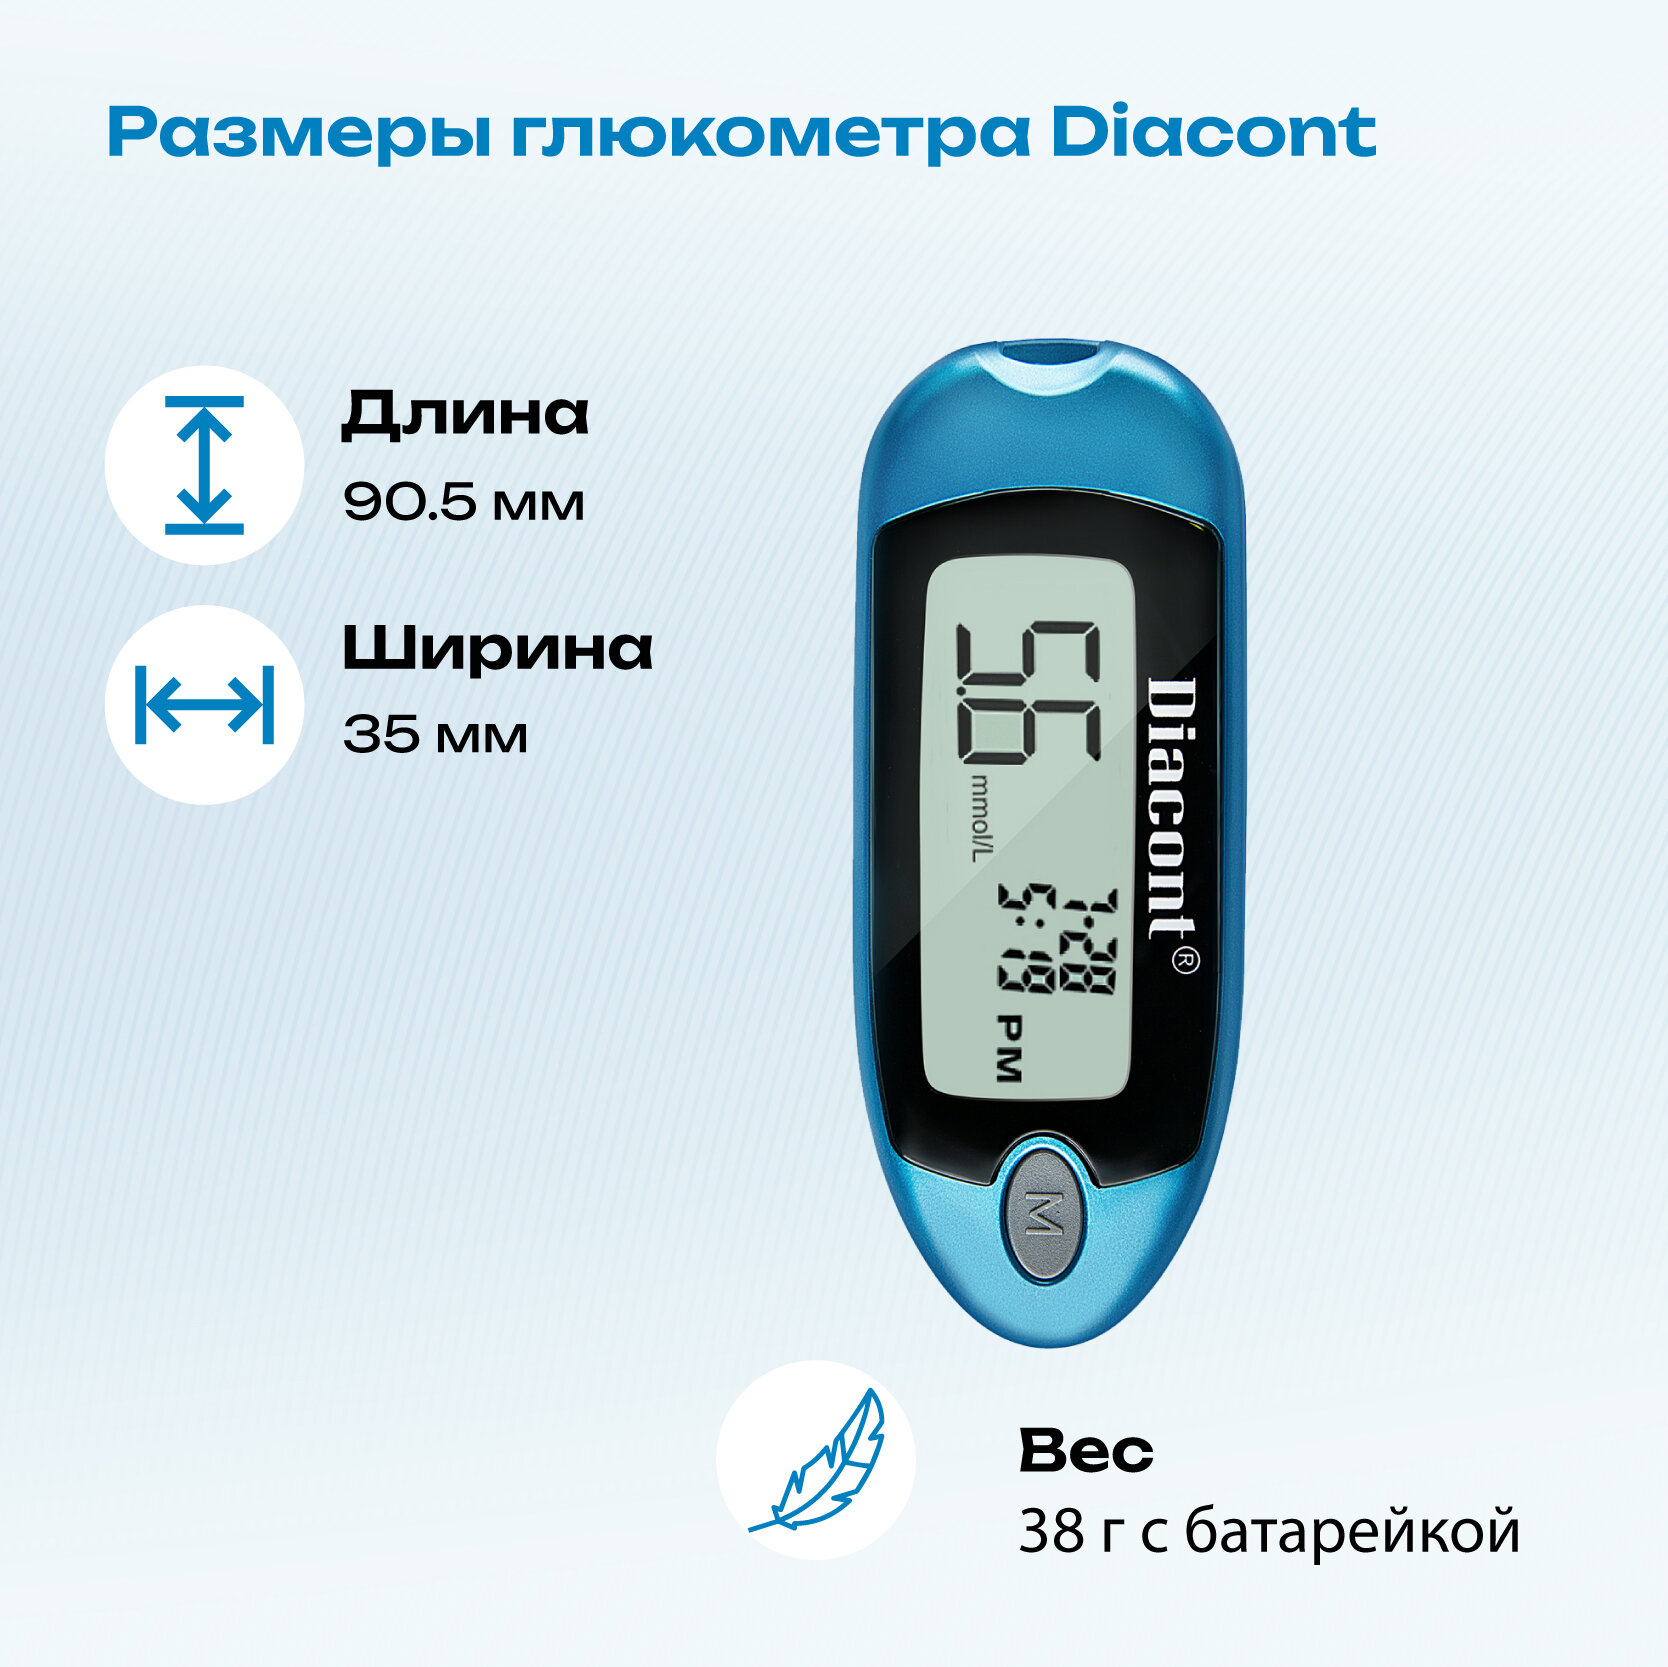 Глюкометр Diacont (Диаконт) с принадлежностями ОК Биотек Ко., Лтд. - фото №14